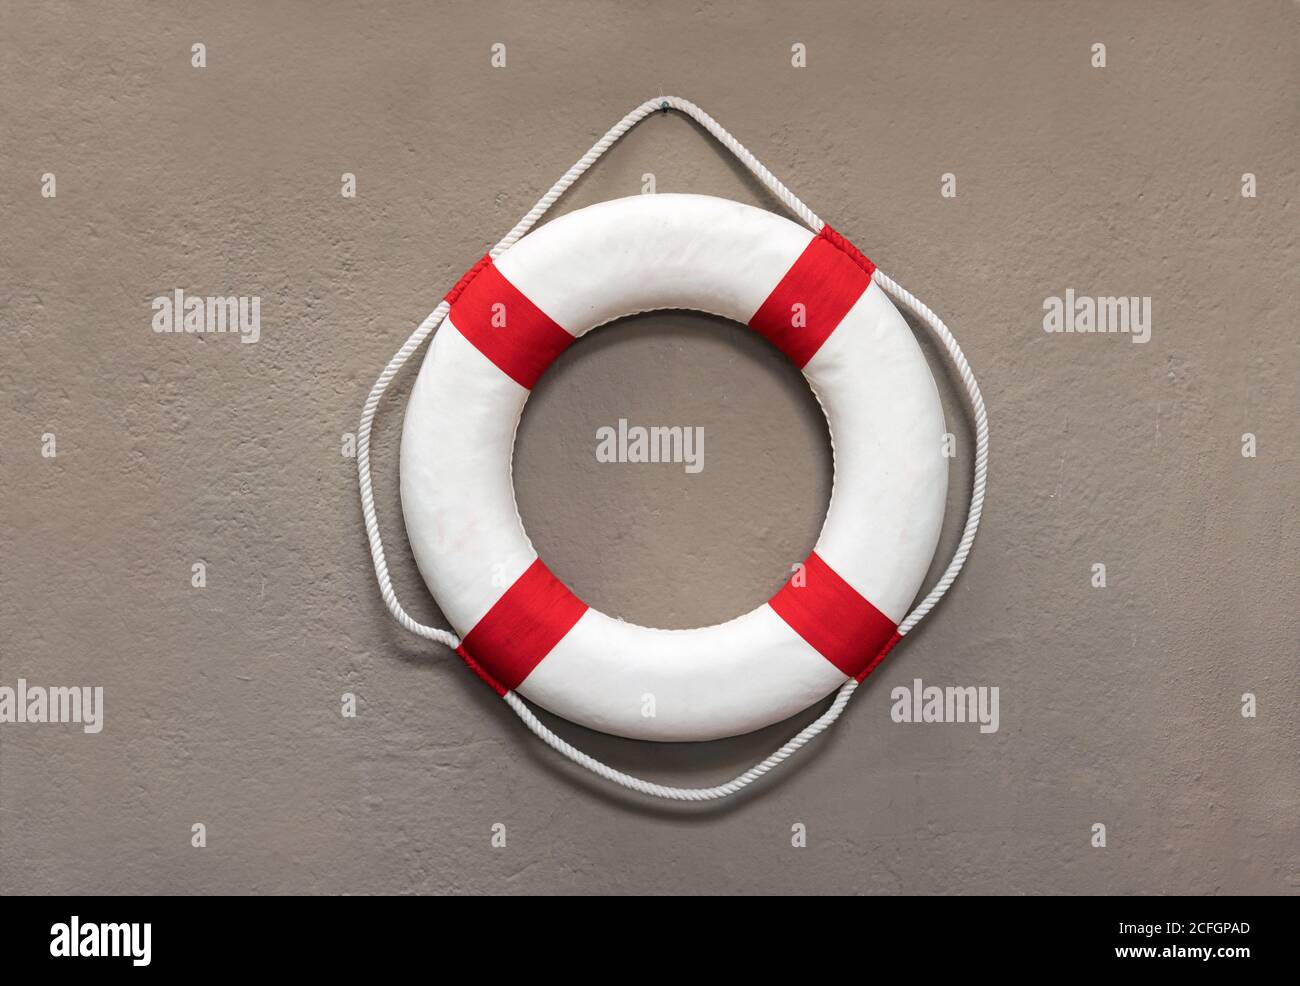 Runder roter und weißer Rettungsring oder Rettungsring zum Aufhängen Eine Wand für den Einsatz als Auftriebshilfe oder Flotation Gerät im Falle des Ertrinkens oder Sinkens eines Stockfoto